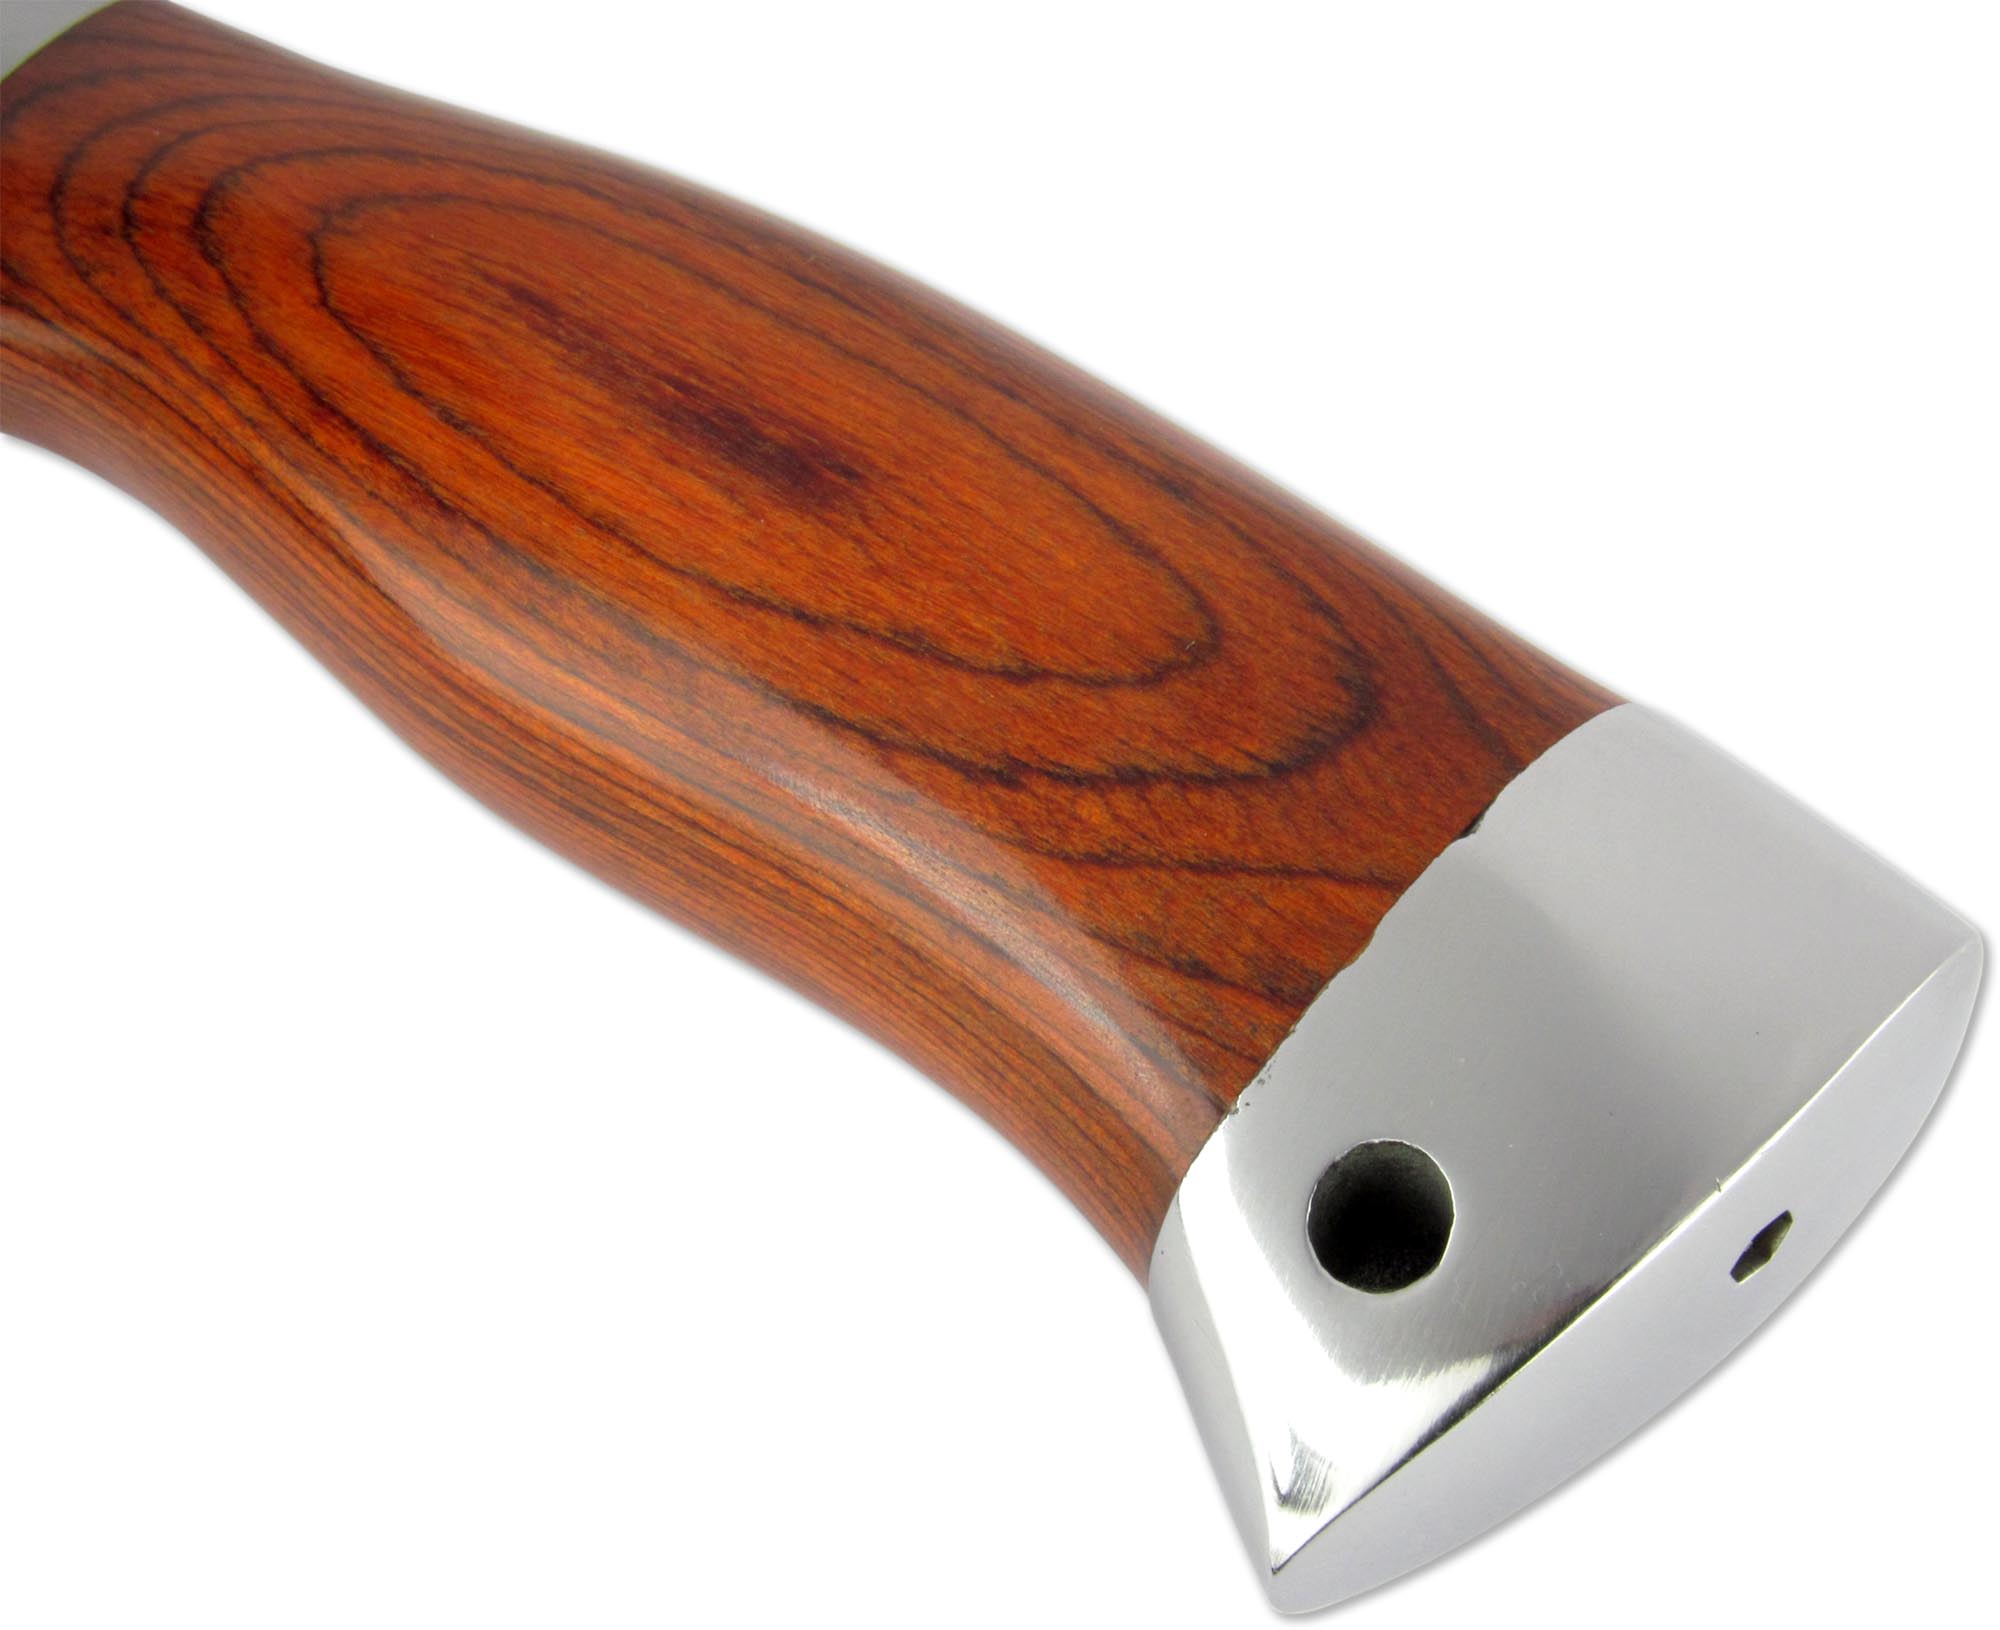 Нож нескладной H-179 "Ножемир" с деревянной рукоятью и чехлом кордура